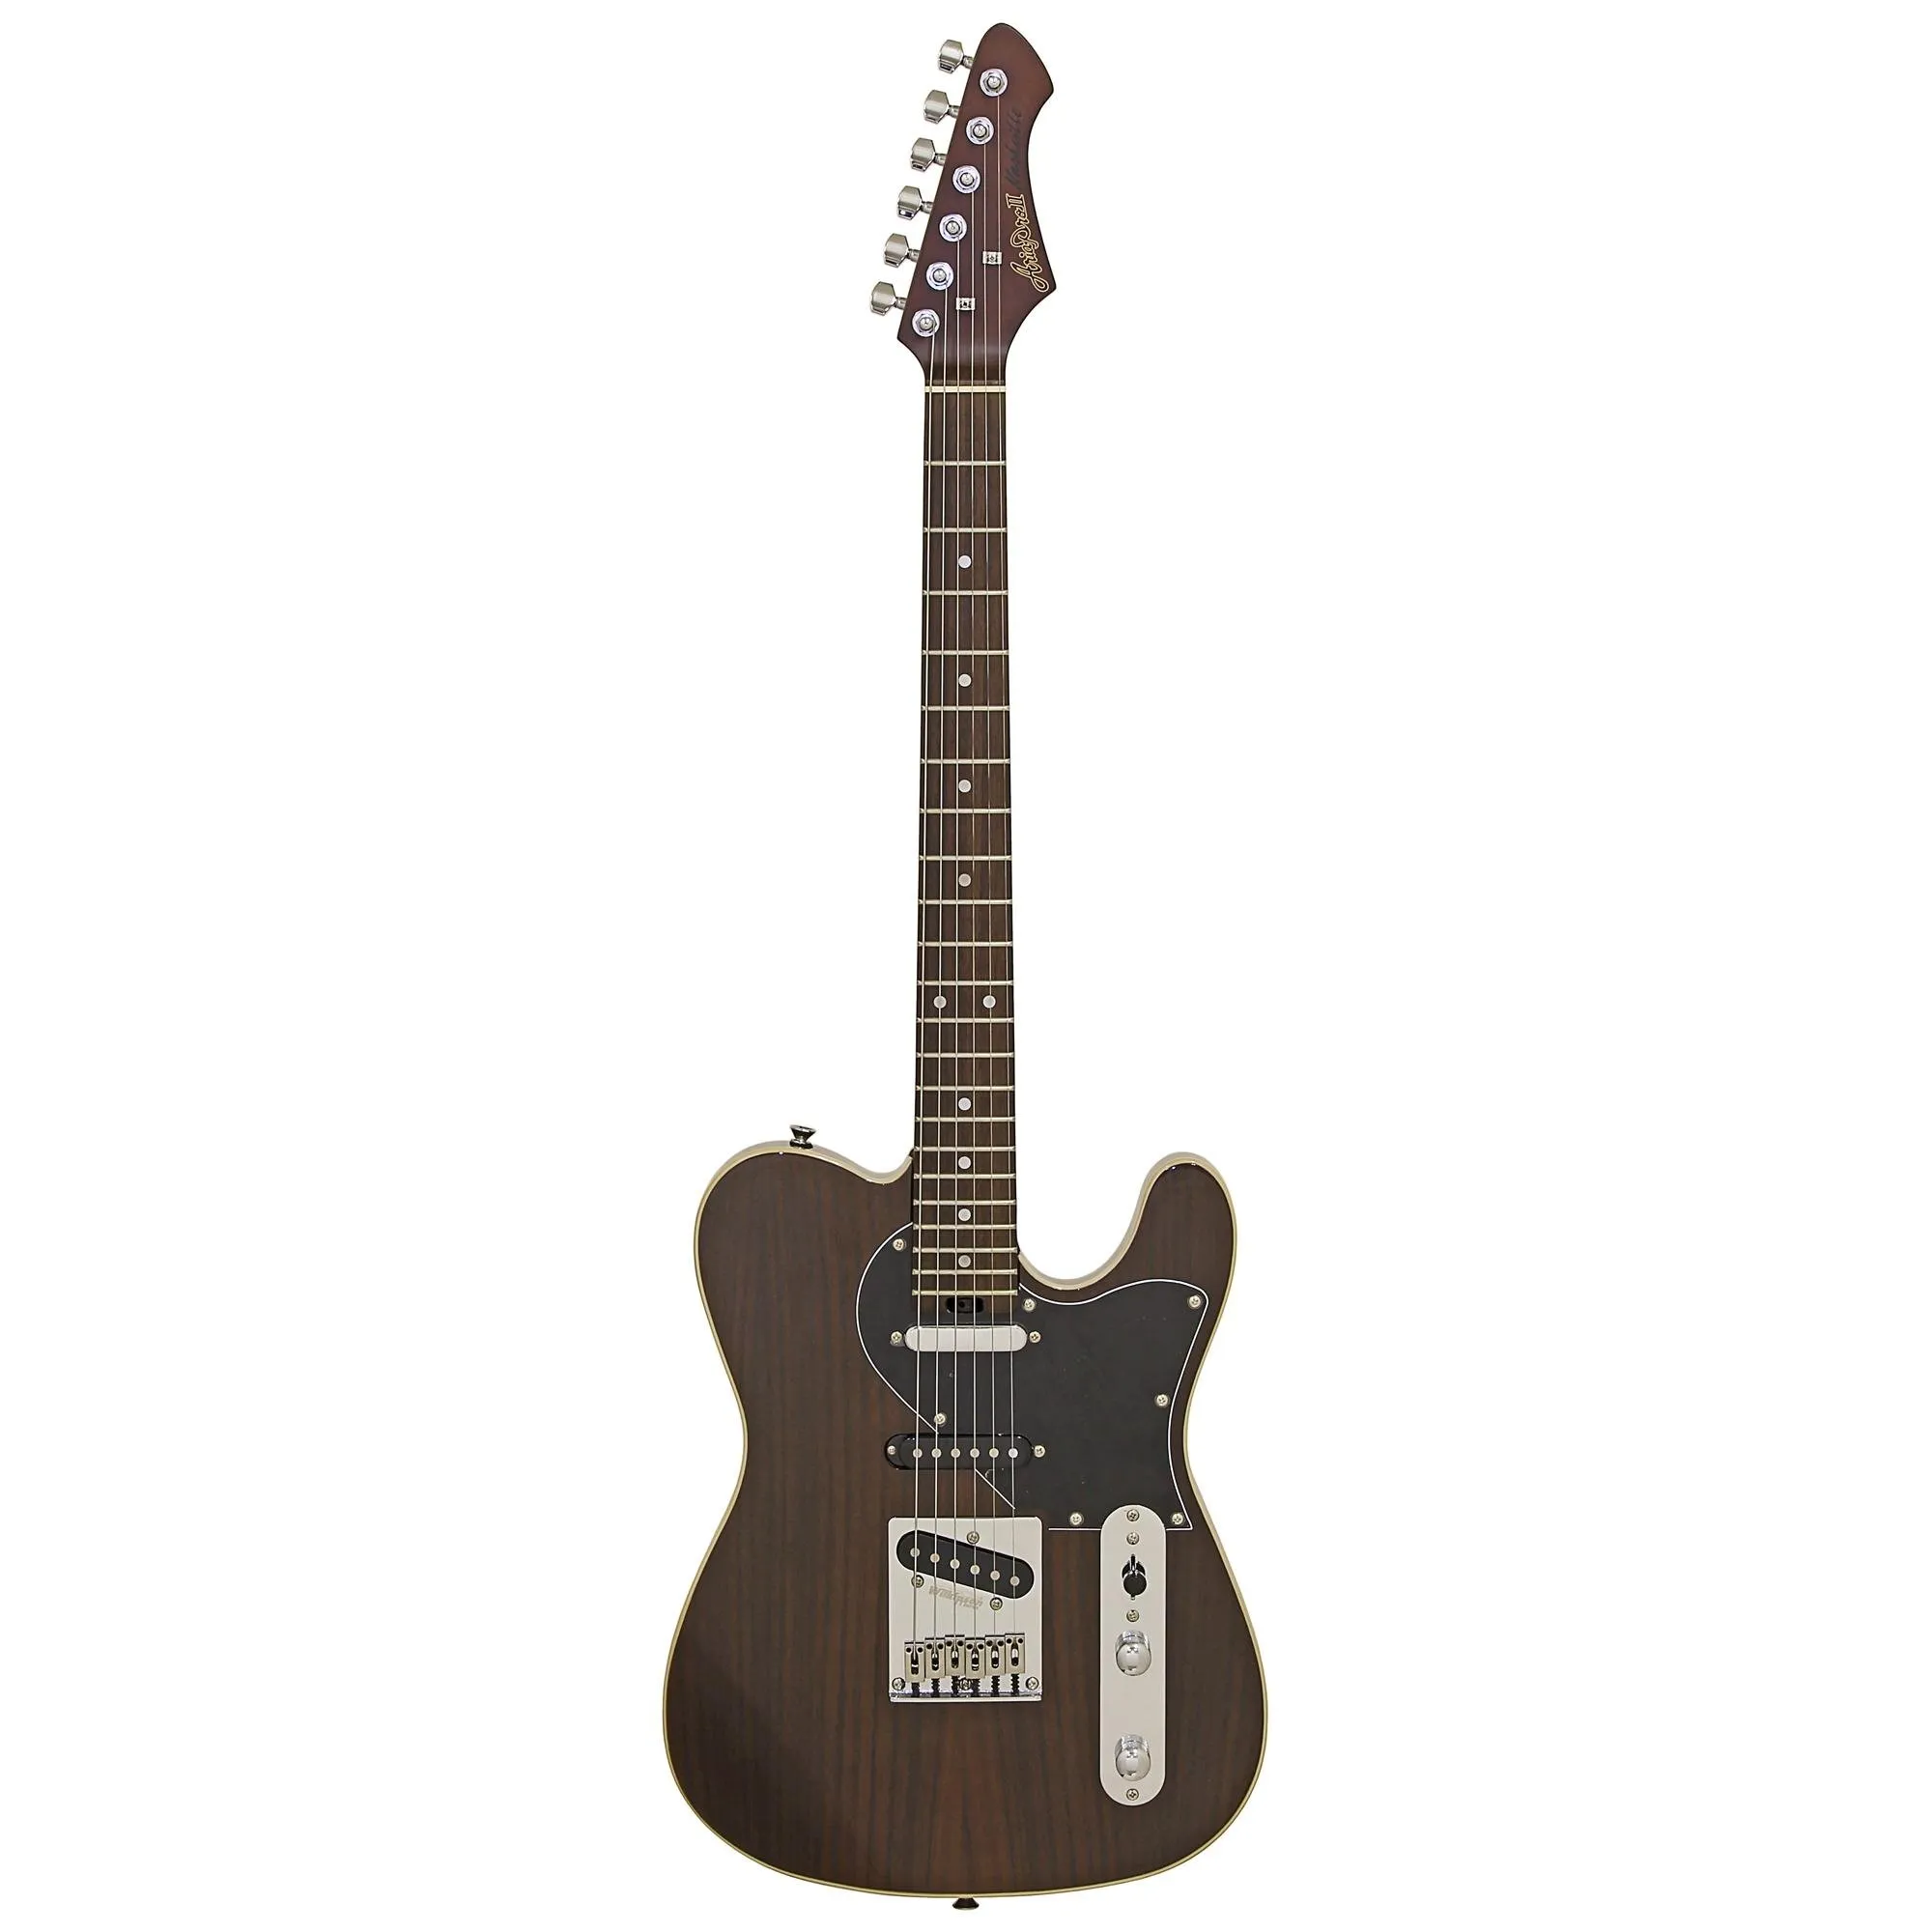 Guitarra Aria Pro II 615-GH Nashville por 3.226,00 à vista no boleto/pix ou parcele em até 12x sem juros. Compre na loja Mundomax!